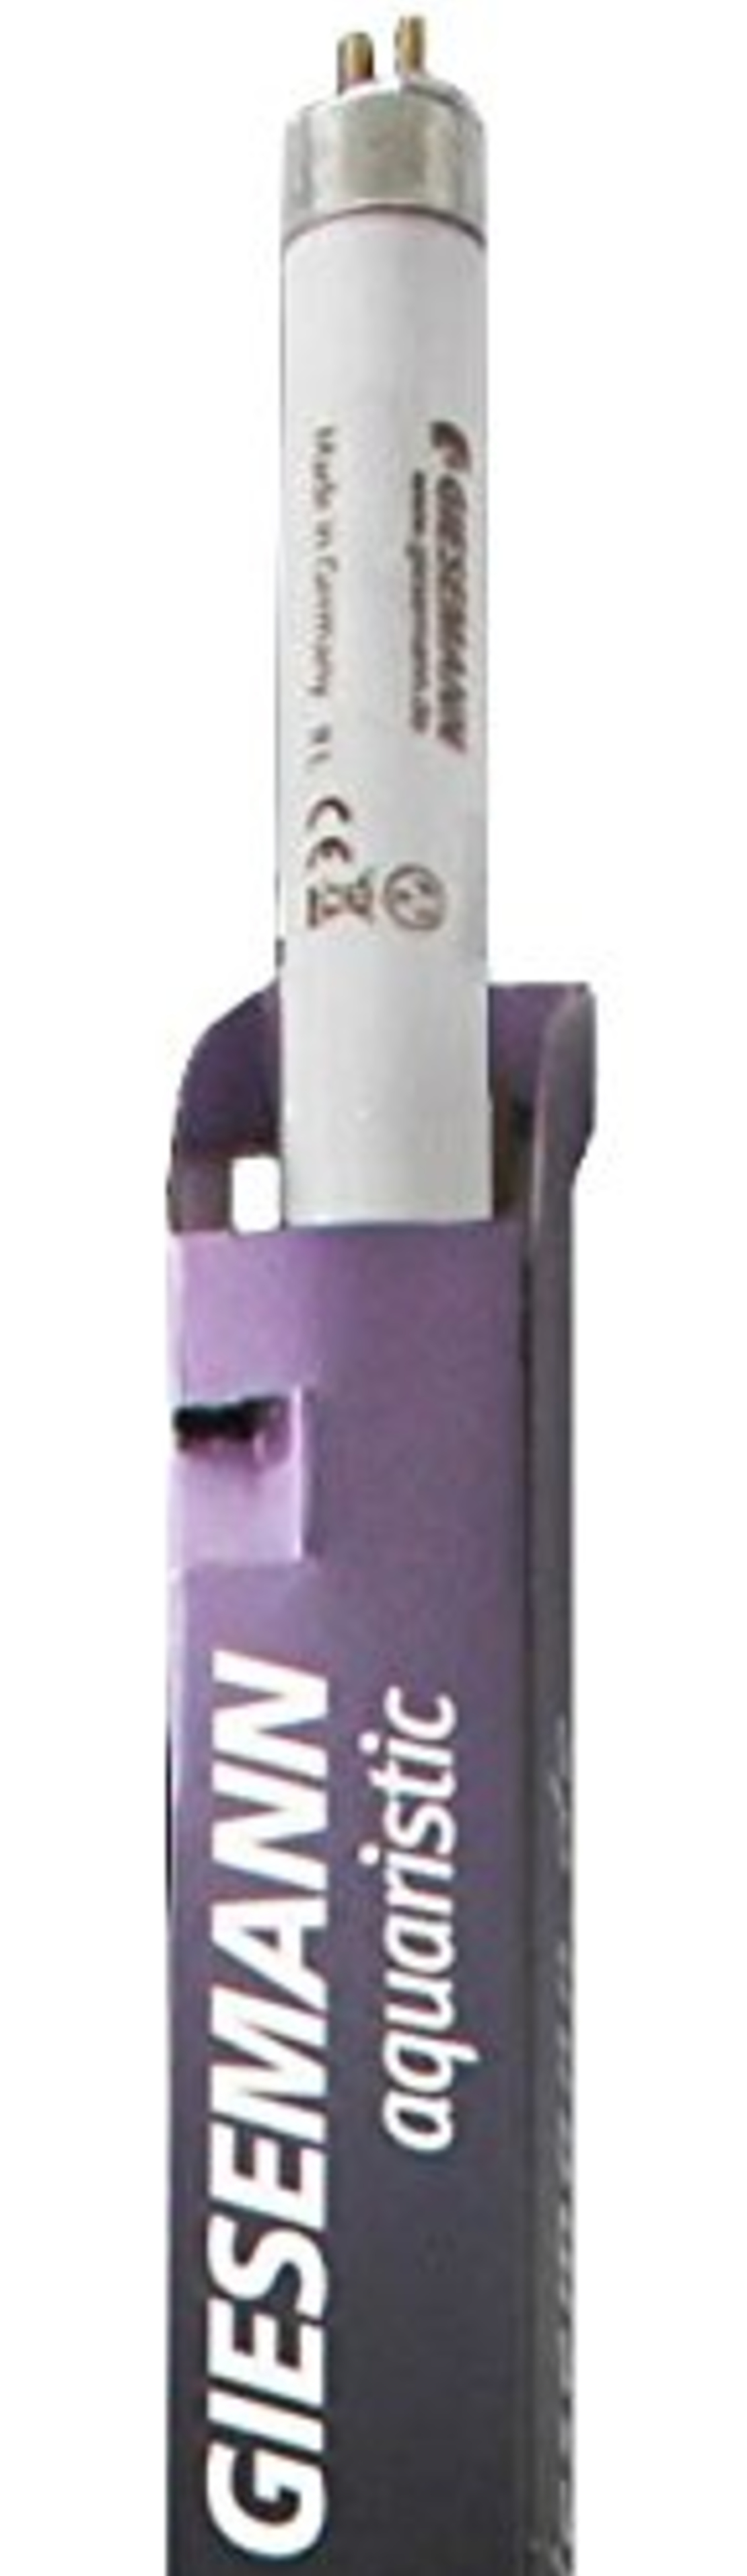 GIESEMANN Super Purple T5 54w |  נורת T5 למלוחים בגוון סגול